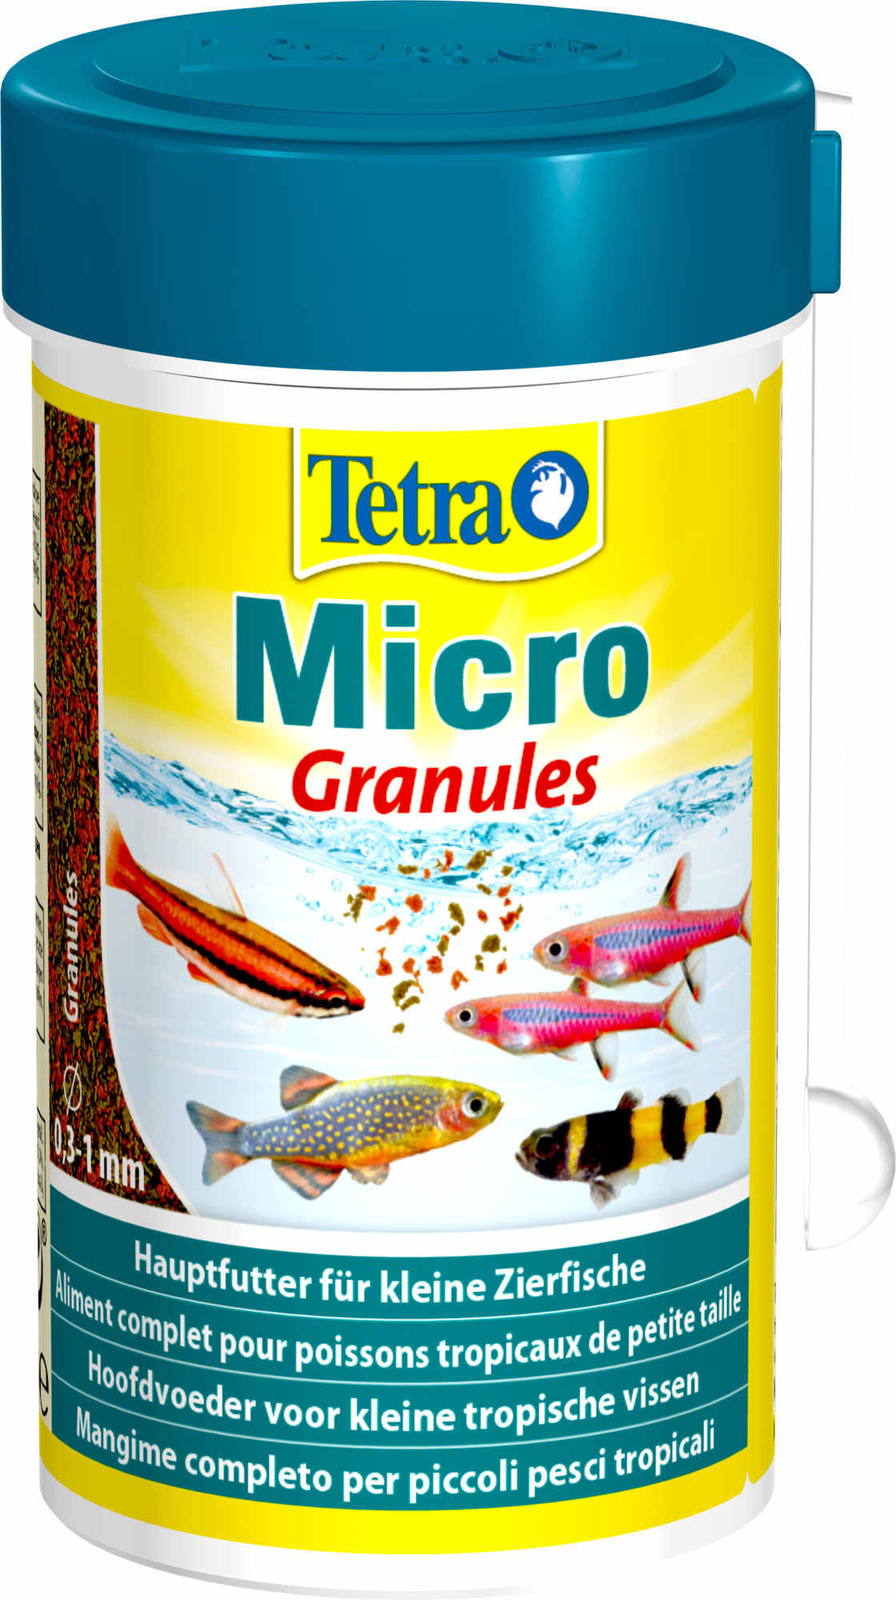 Tetra (корма) Tetra (корма) корм для всех видов мелких рыб, микрогранулы (45 г) tetra корма tetra корма корм для всех видов рыб мелкие гранулы 45 г